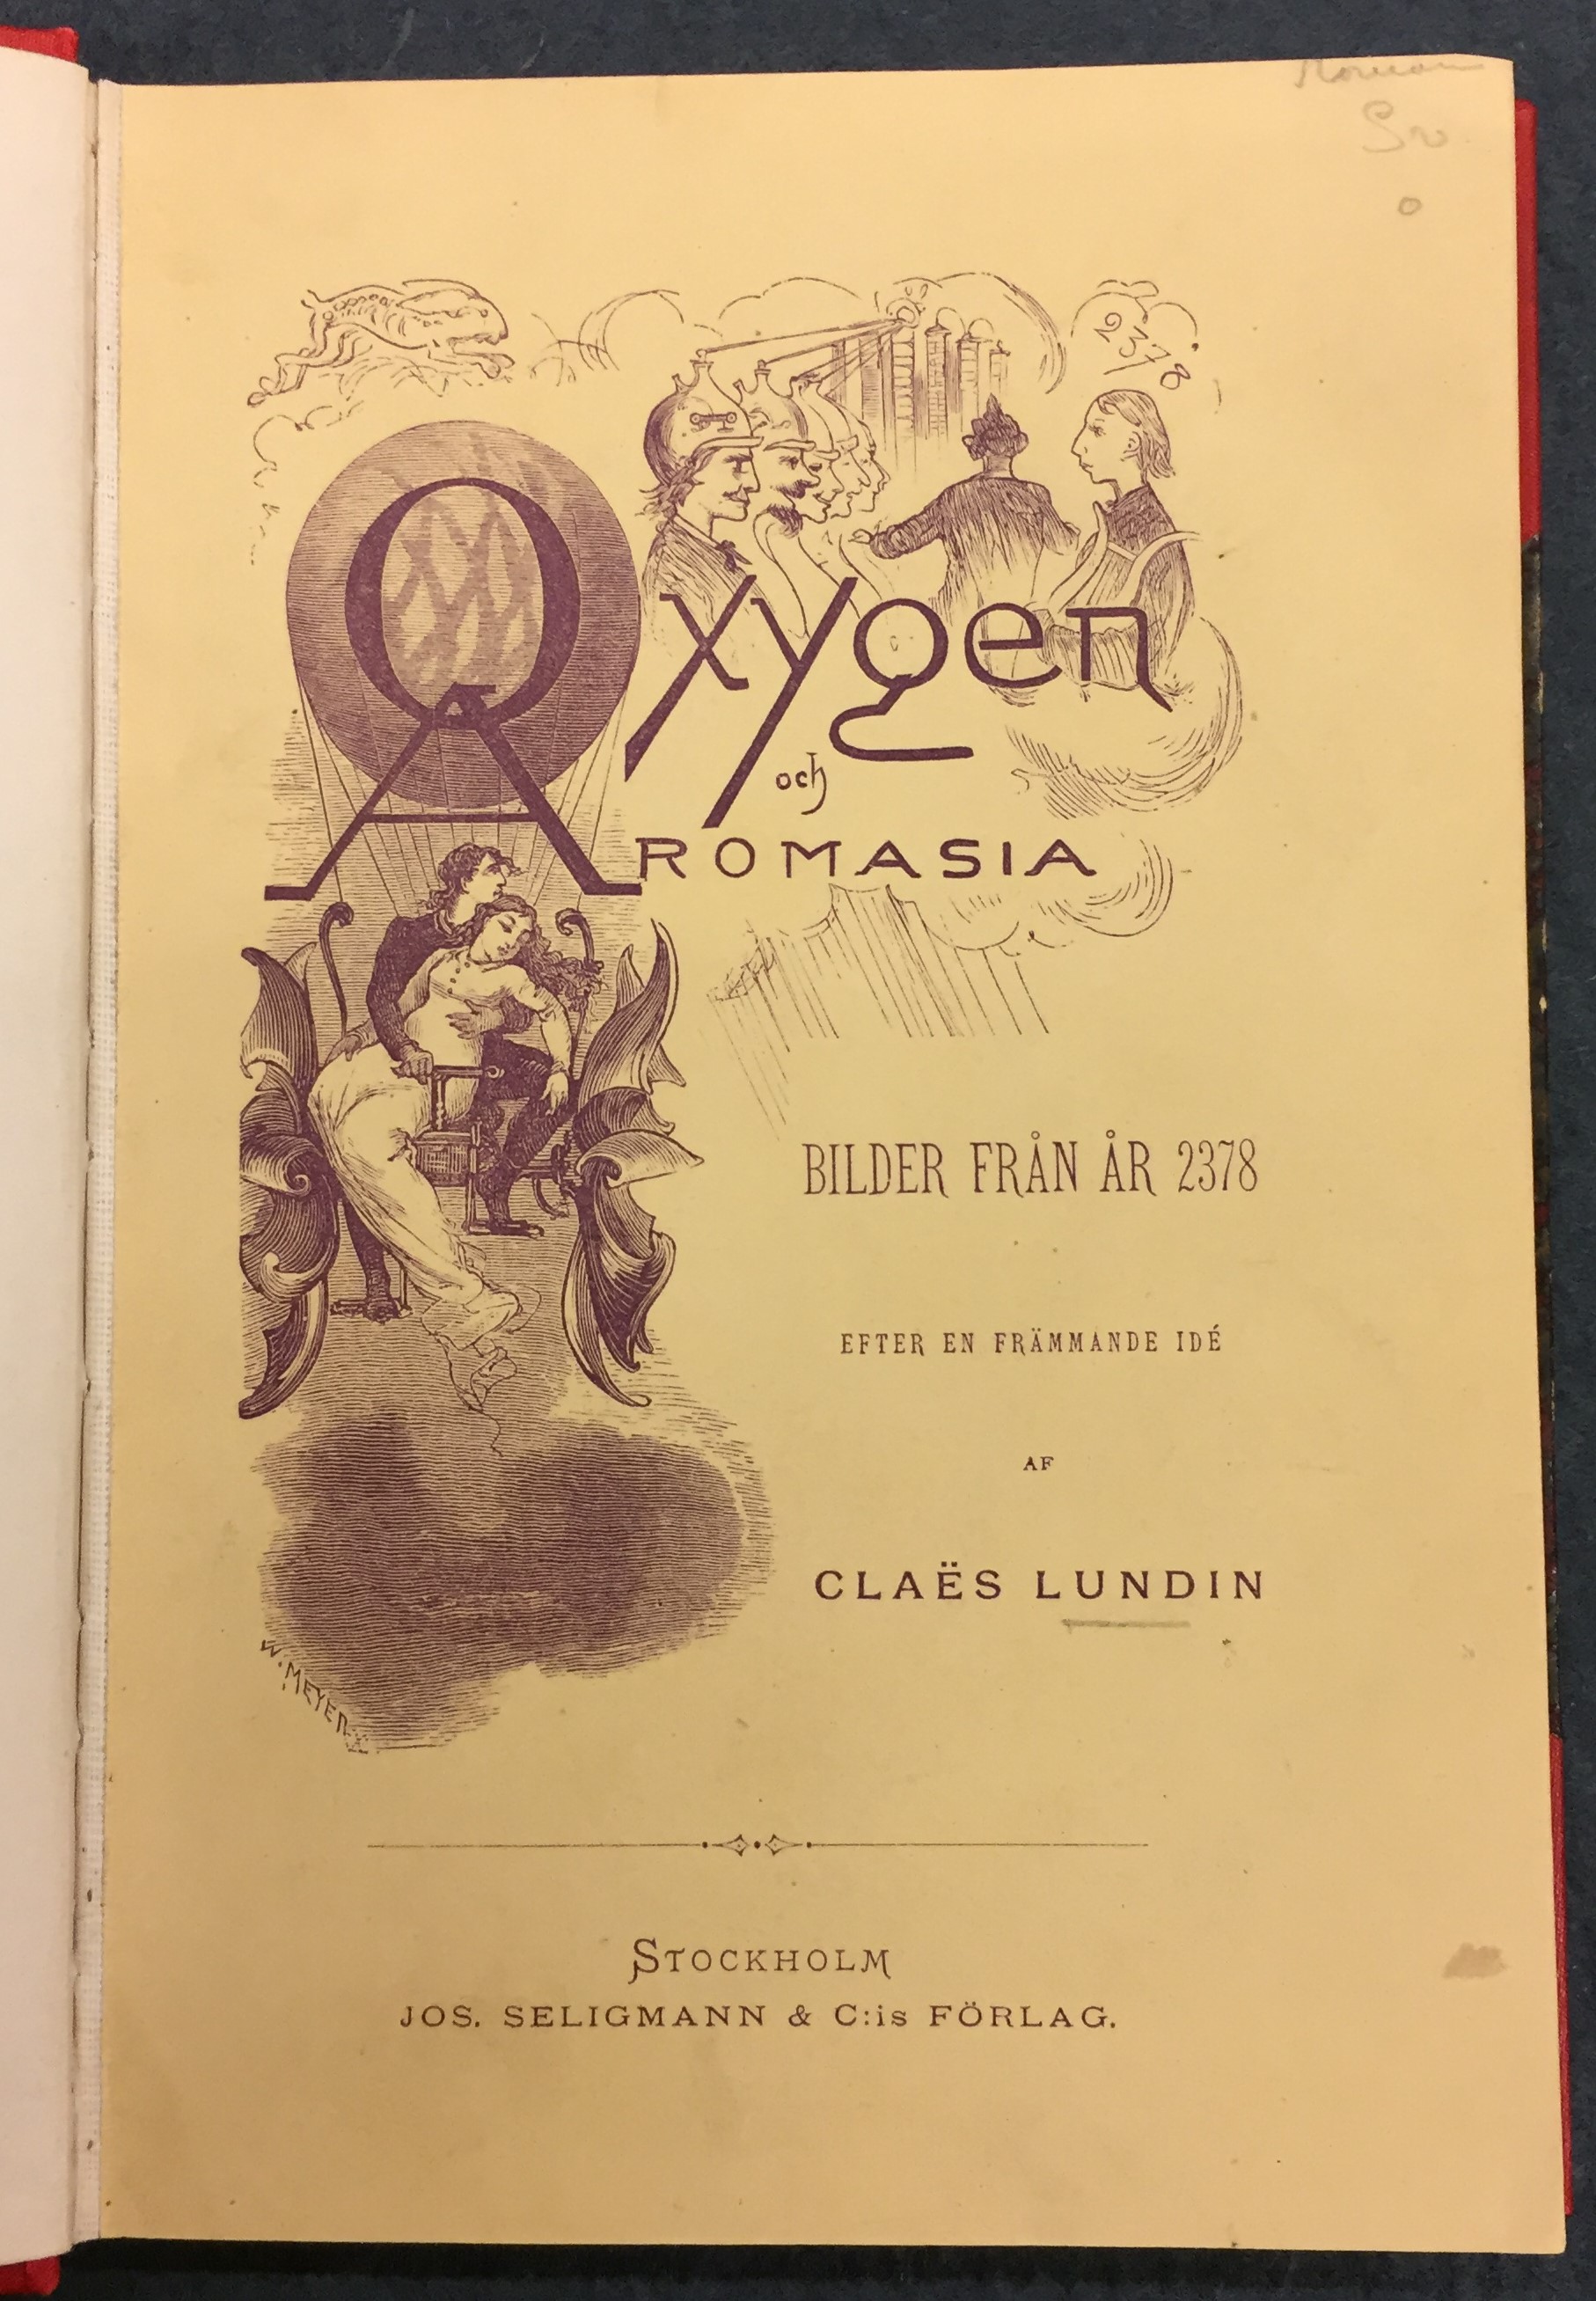 Titelsida till Oxygen & Aromasia med svartvit illustration av bland annat ett par i en fantasifull flygmaskin.